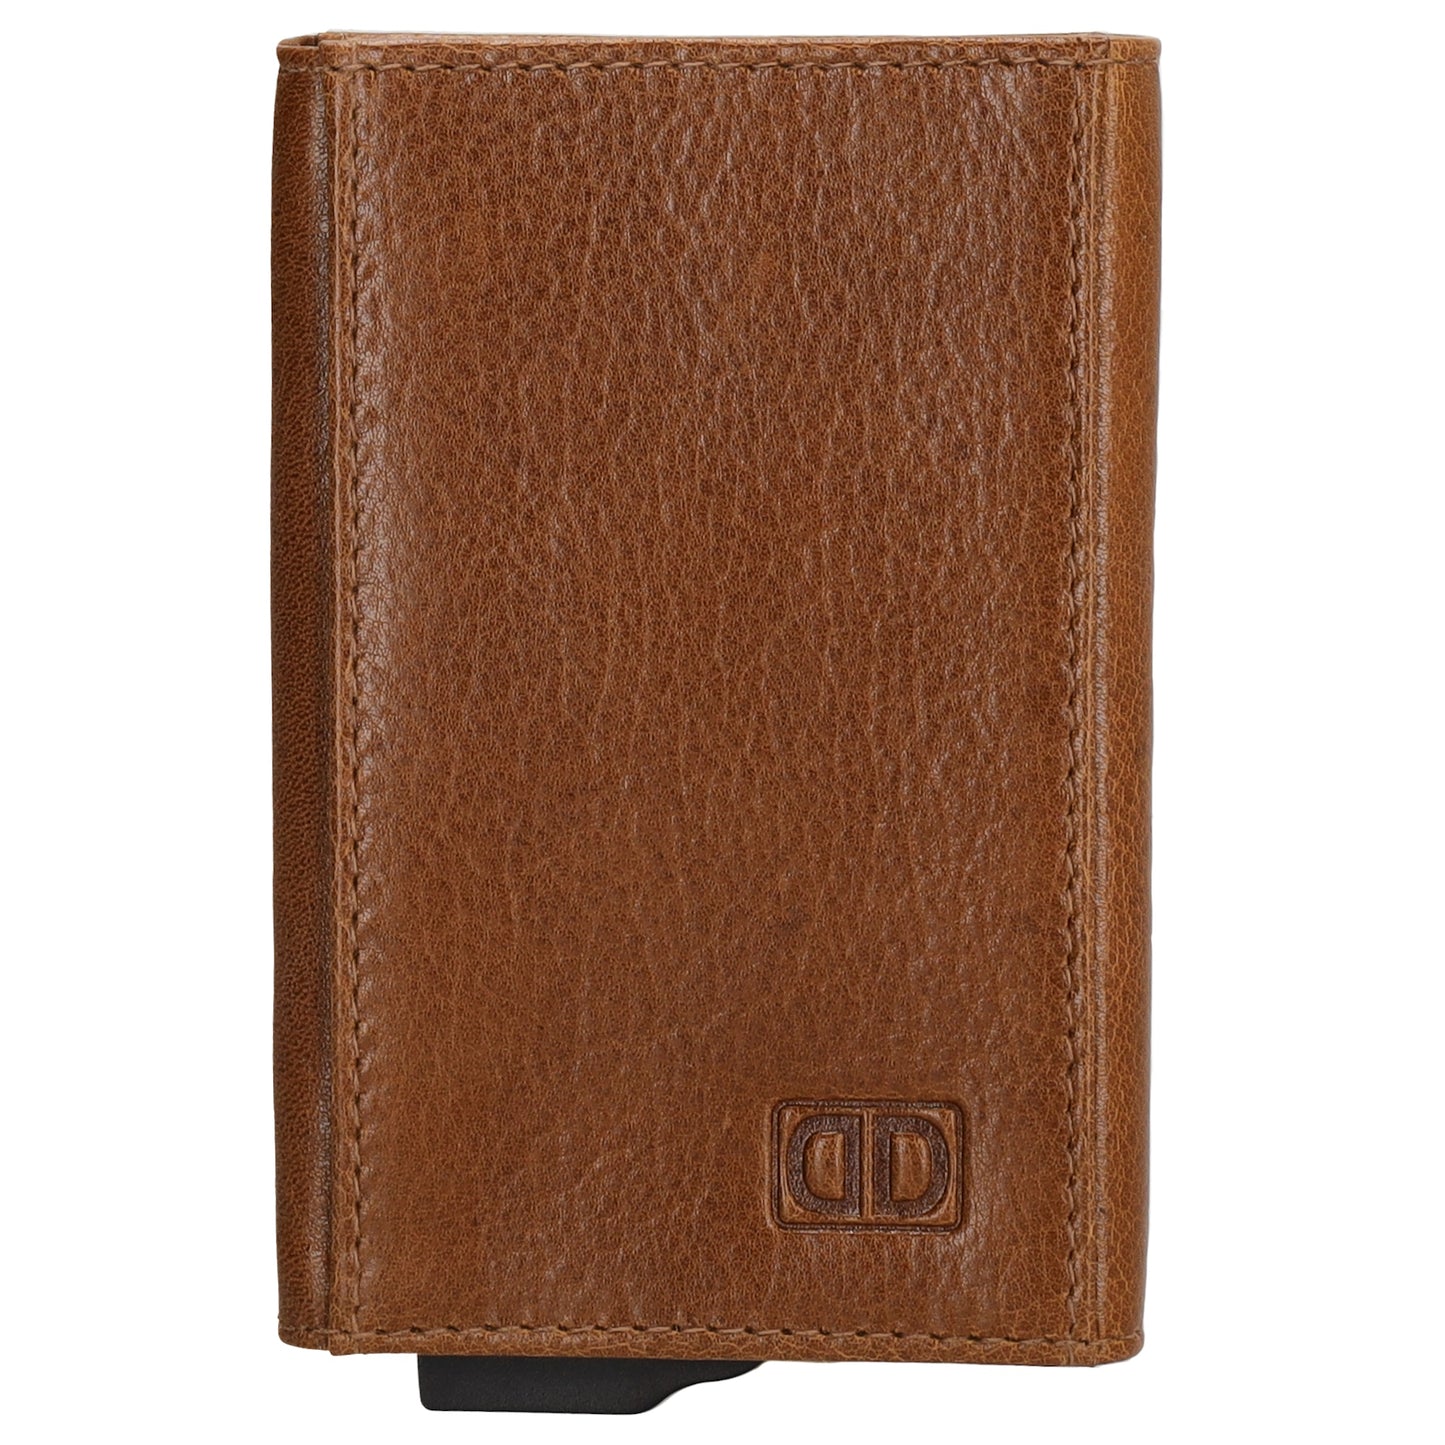 Kartenetui| Safty Wallet 10x7cm in Cognac mit RFID-Schutz